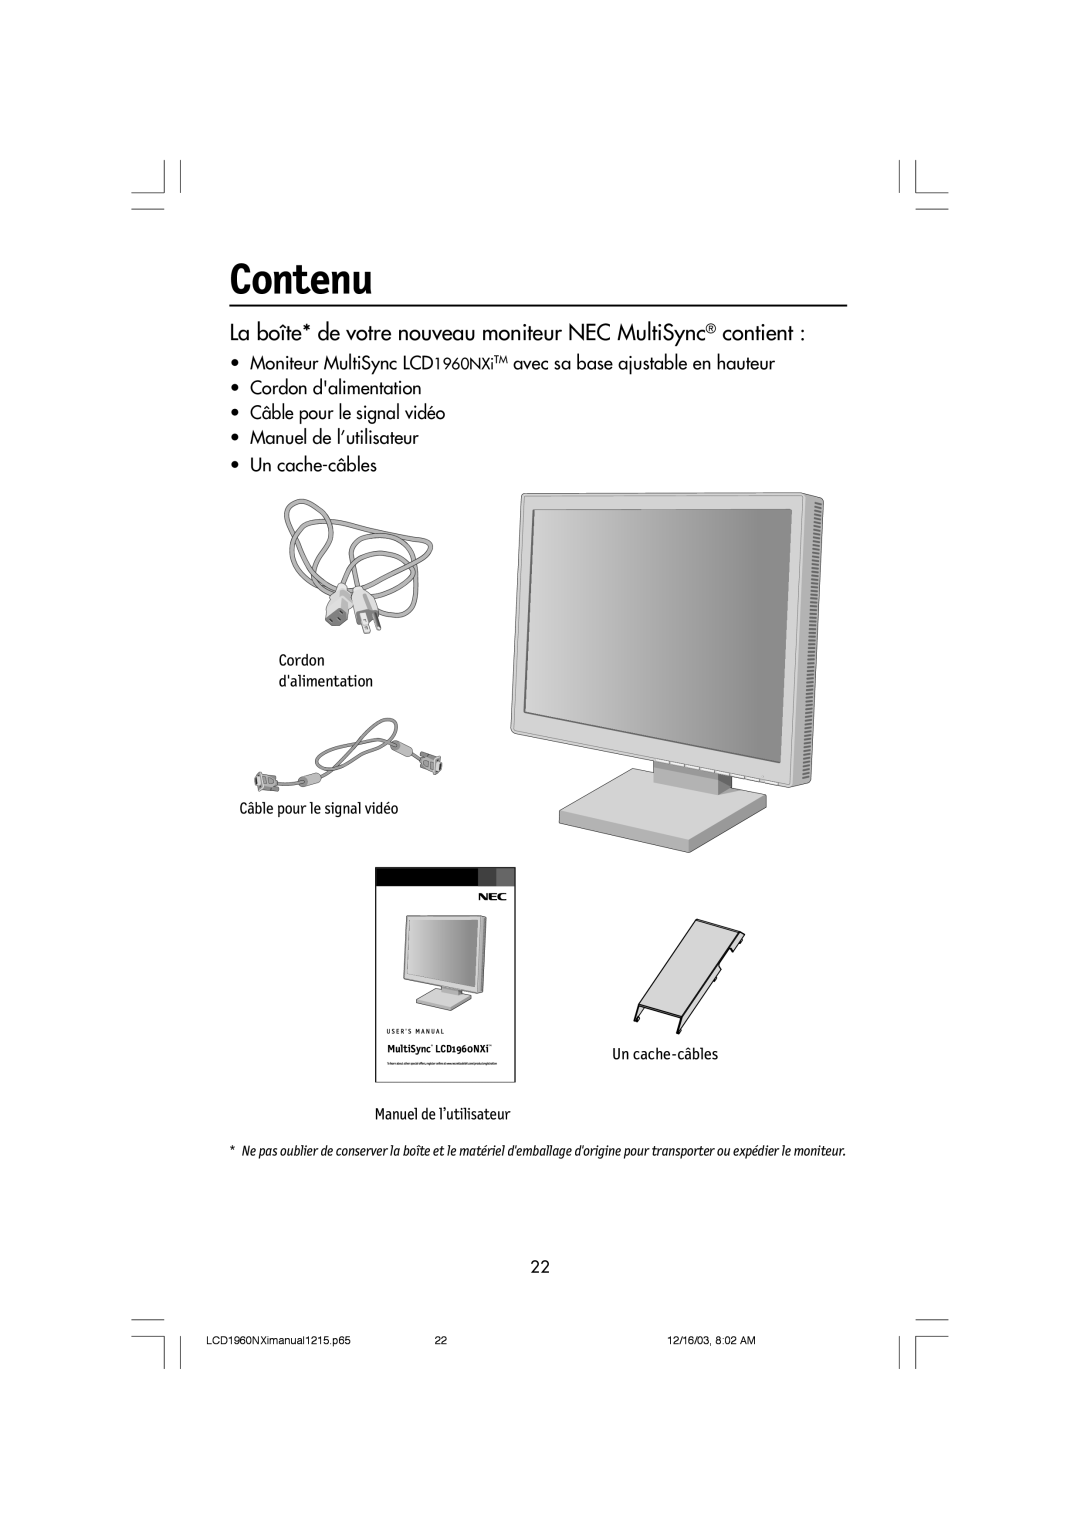 NEC LCD1960NXI manual Contenu, La bo”te* de votre nouveau moniteur NEC MultiSync¨ contient, Manuel de l’utilisateur 